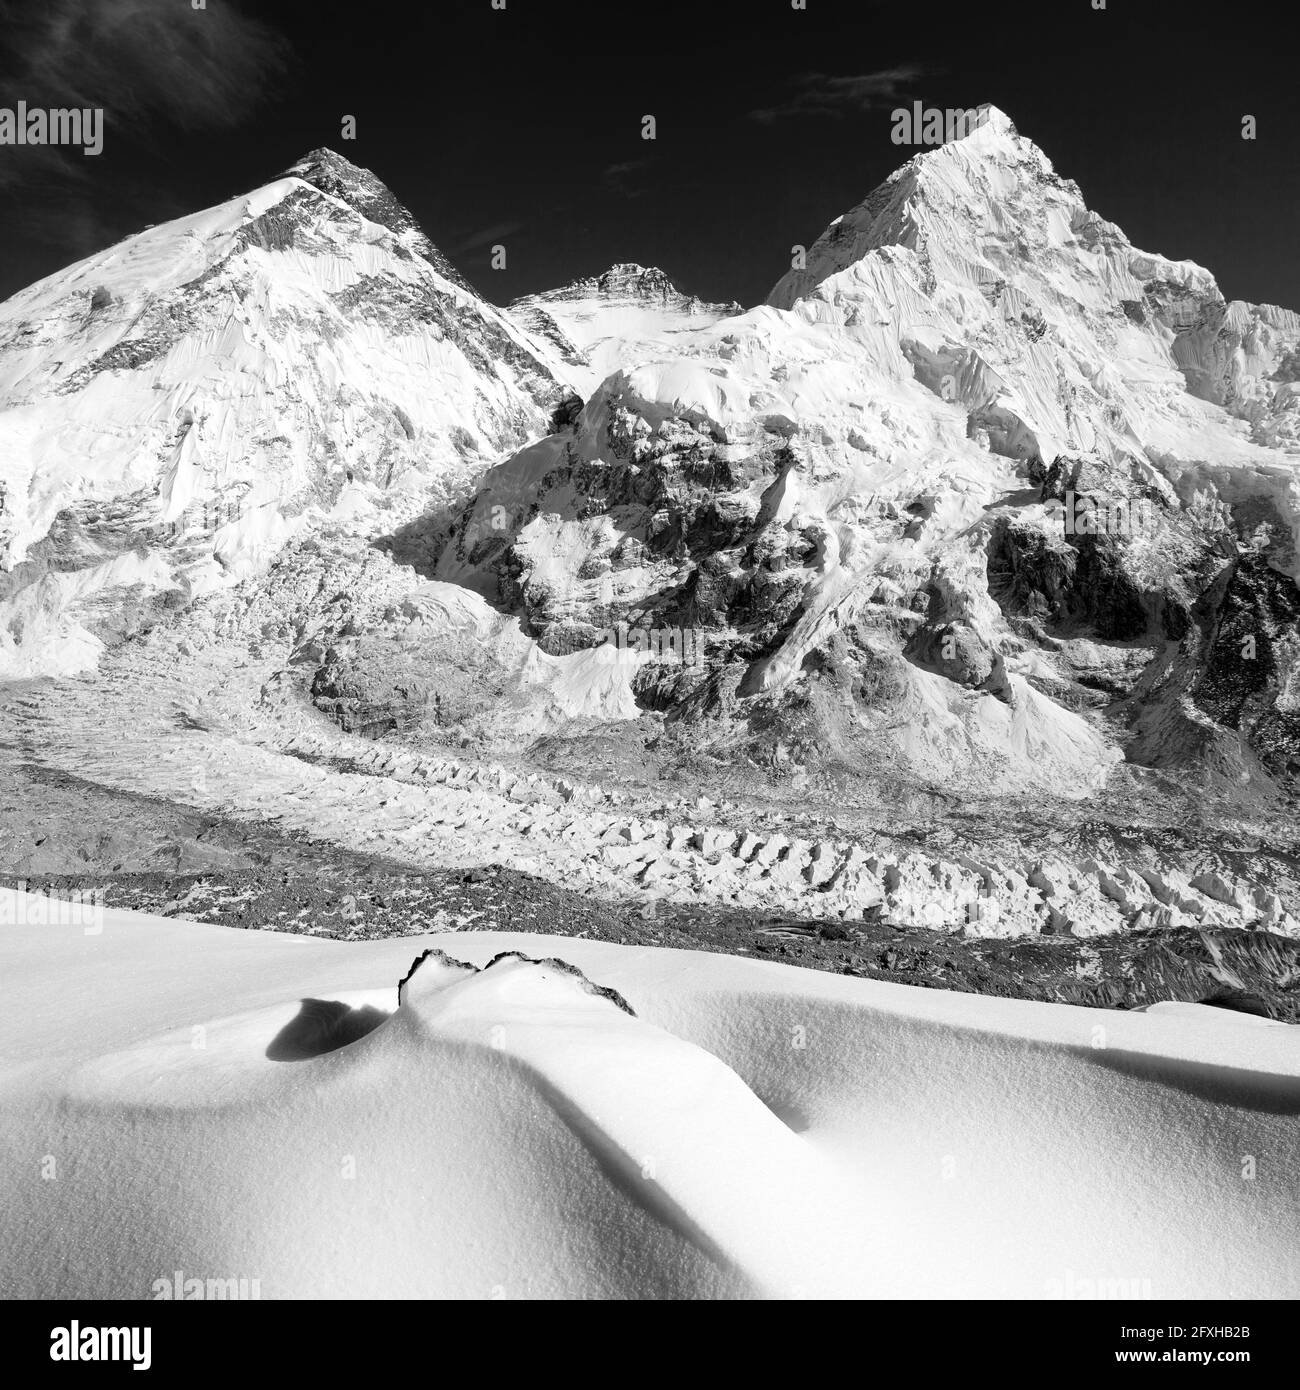 Vue sur le mont Everest, Lhotse et Nuptse depuis le camp de base Pumo RI, vers le camp de base du mont Everest, parc national Sagarmatha, montagnes du Népal Himalaya, Banque D'Images